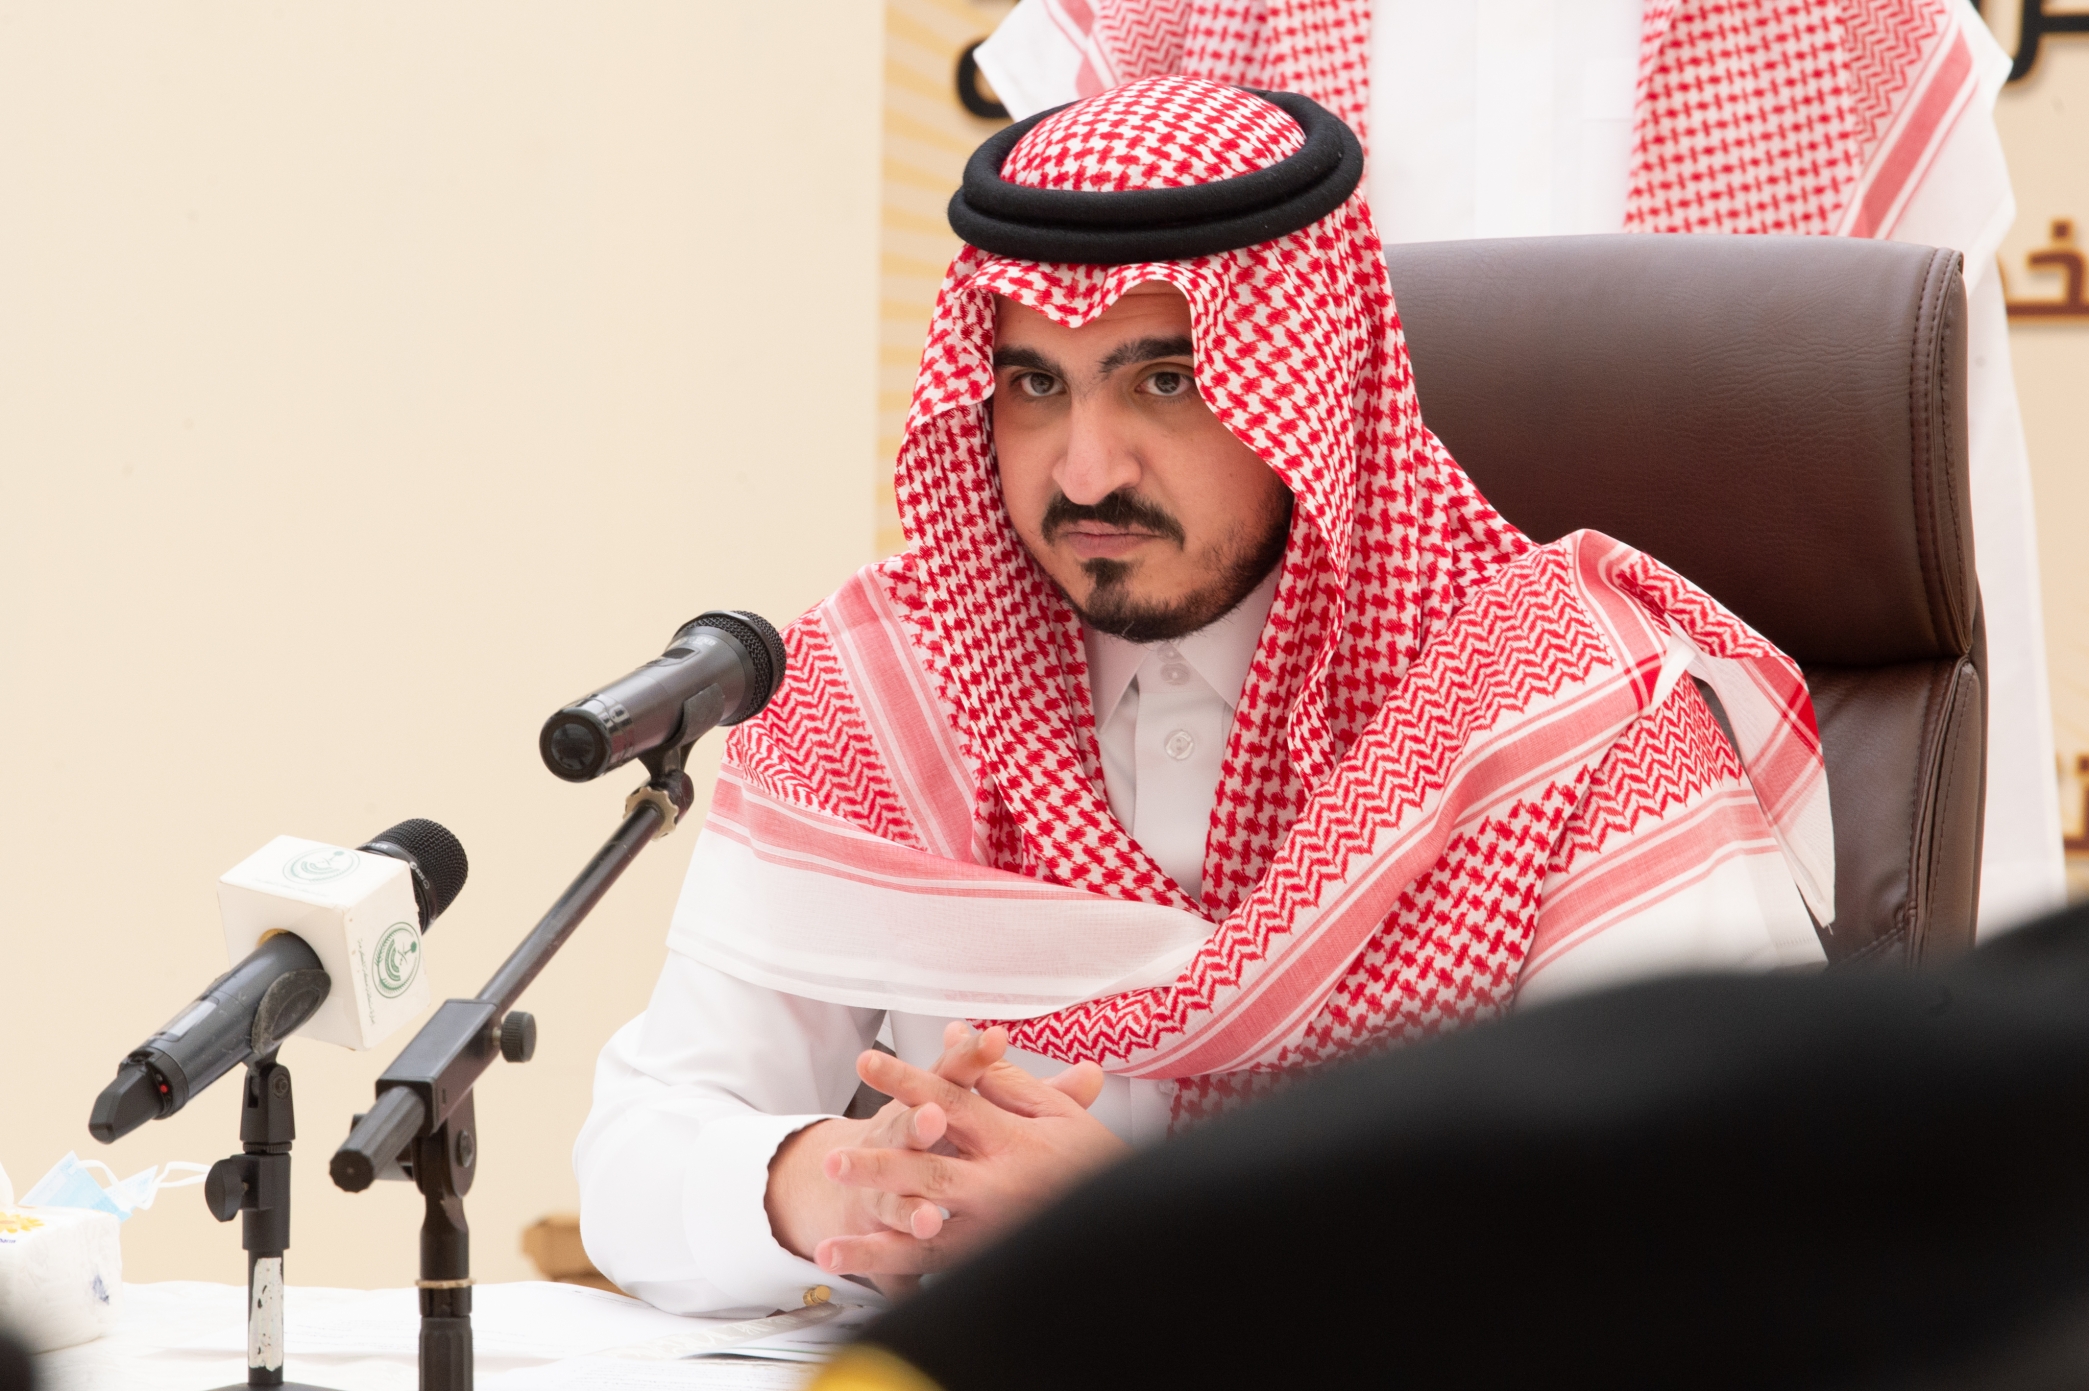 نائب أمير مكة يرأس اجتماعاً في مشعر منى للاطلاع على استعدادات الحج - المواطن